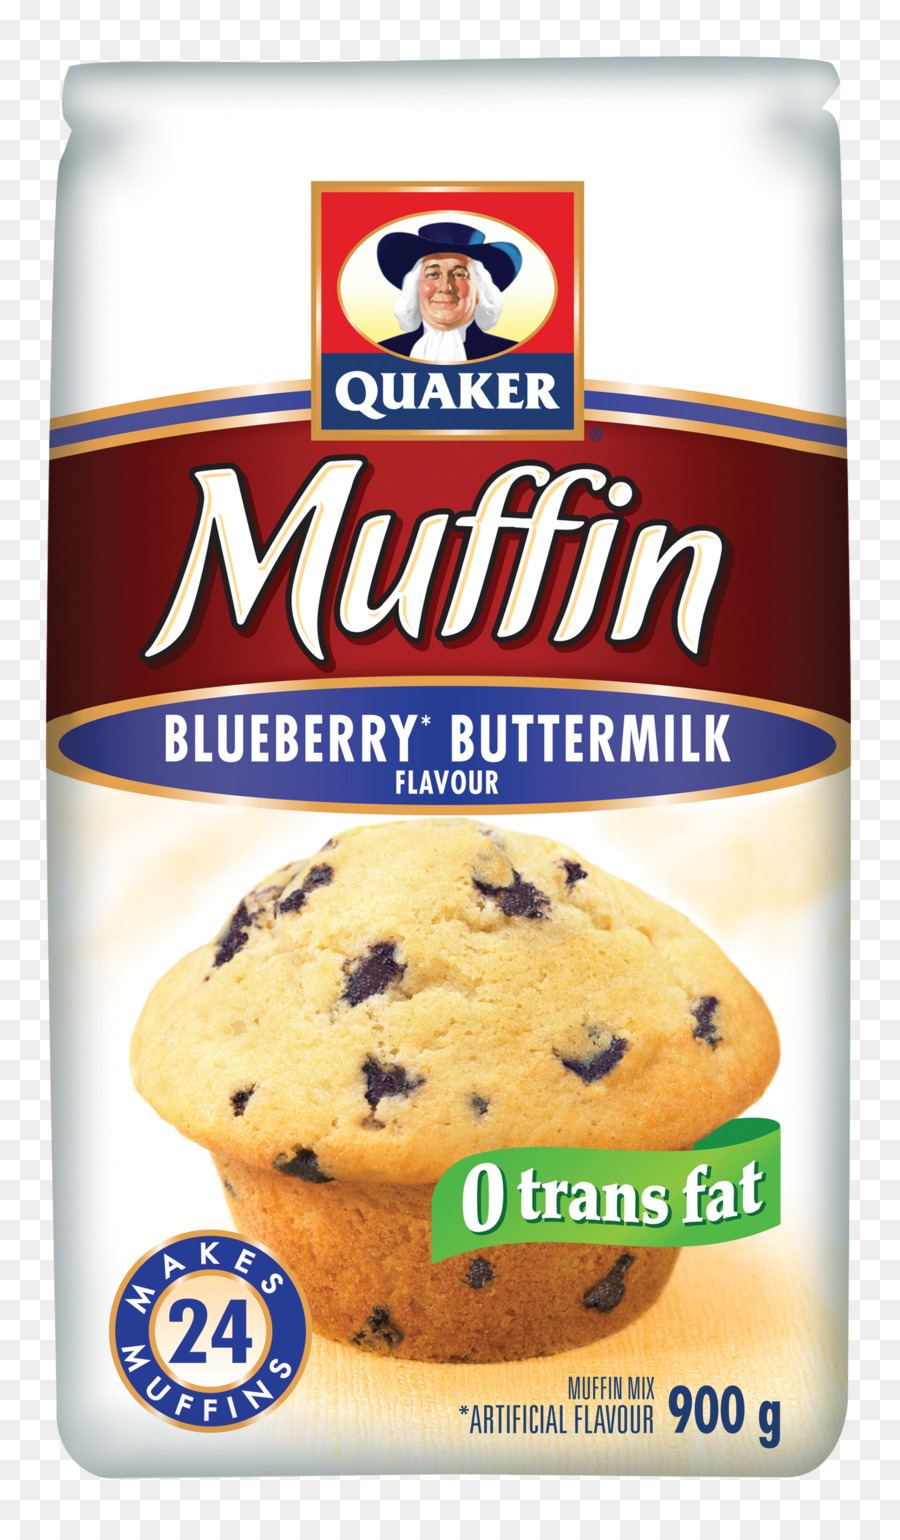 Bánh Quy Muffin Bơ Quaker Oats Công Ty Việt Quất - việt quất